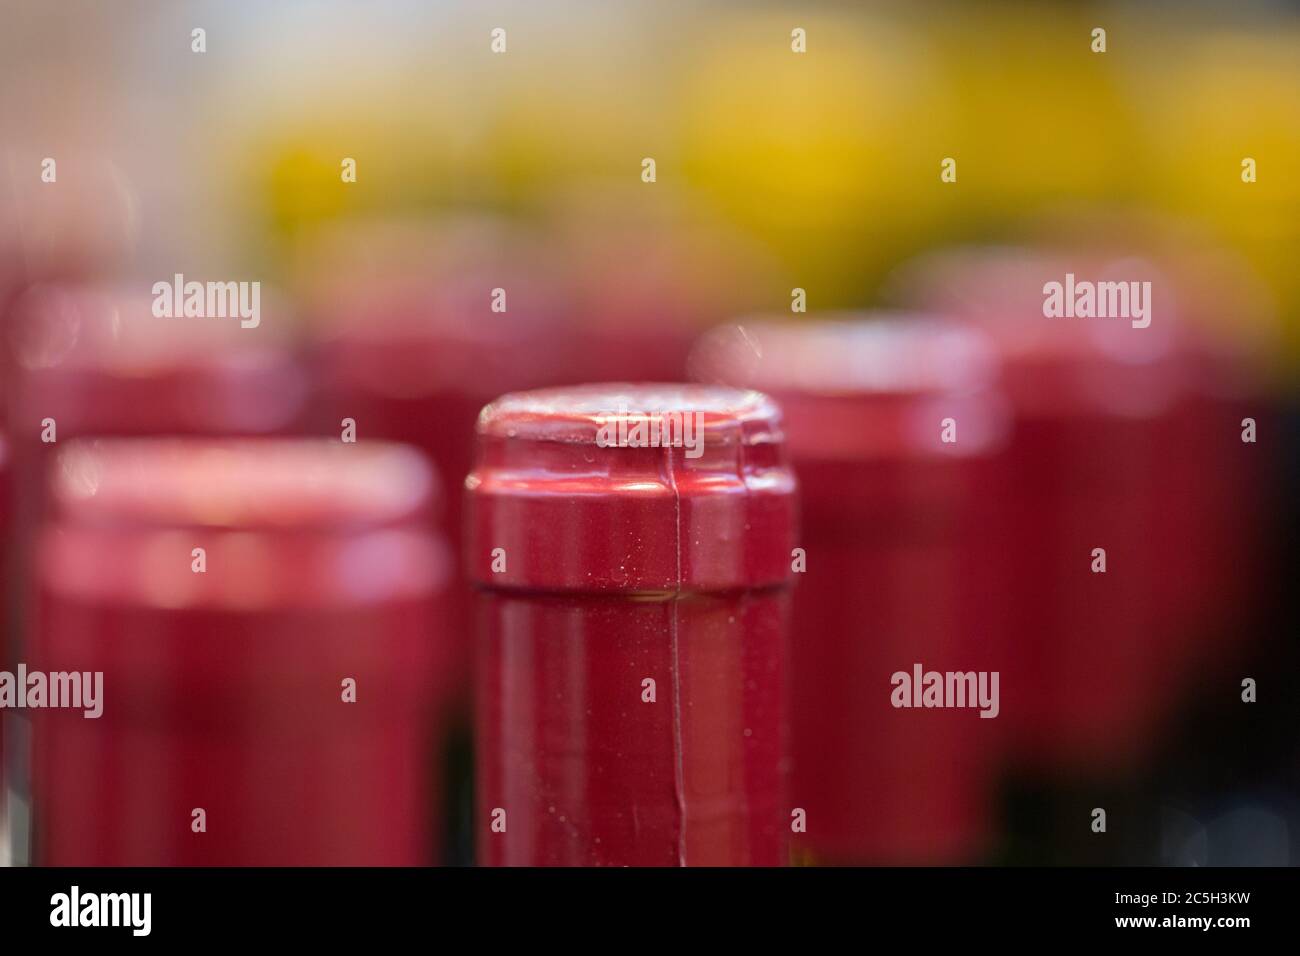 Primo piano di colli di bottiglia / bottiglie di vino rosso Foto Stock